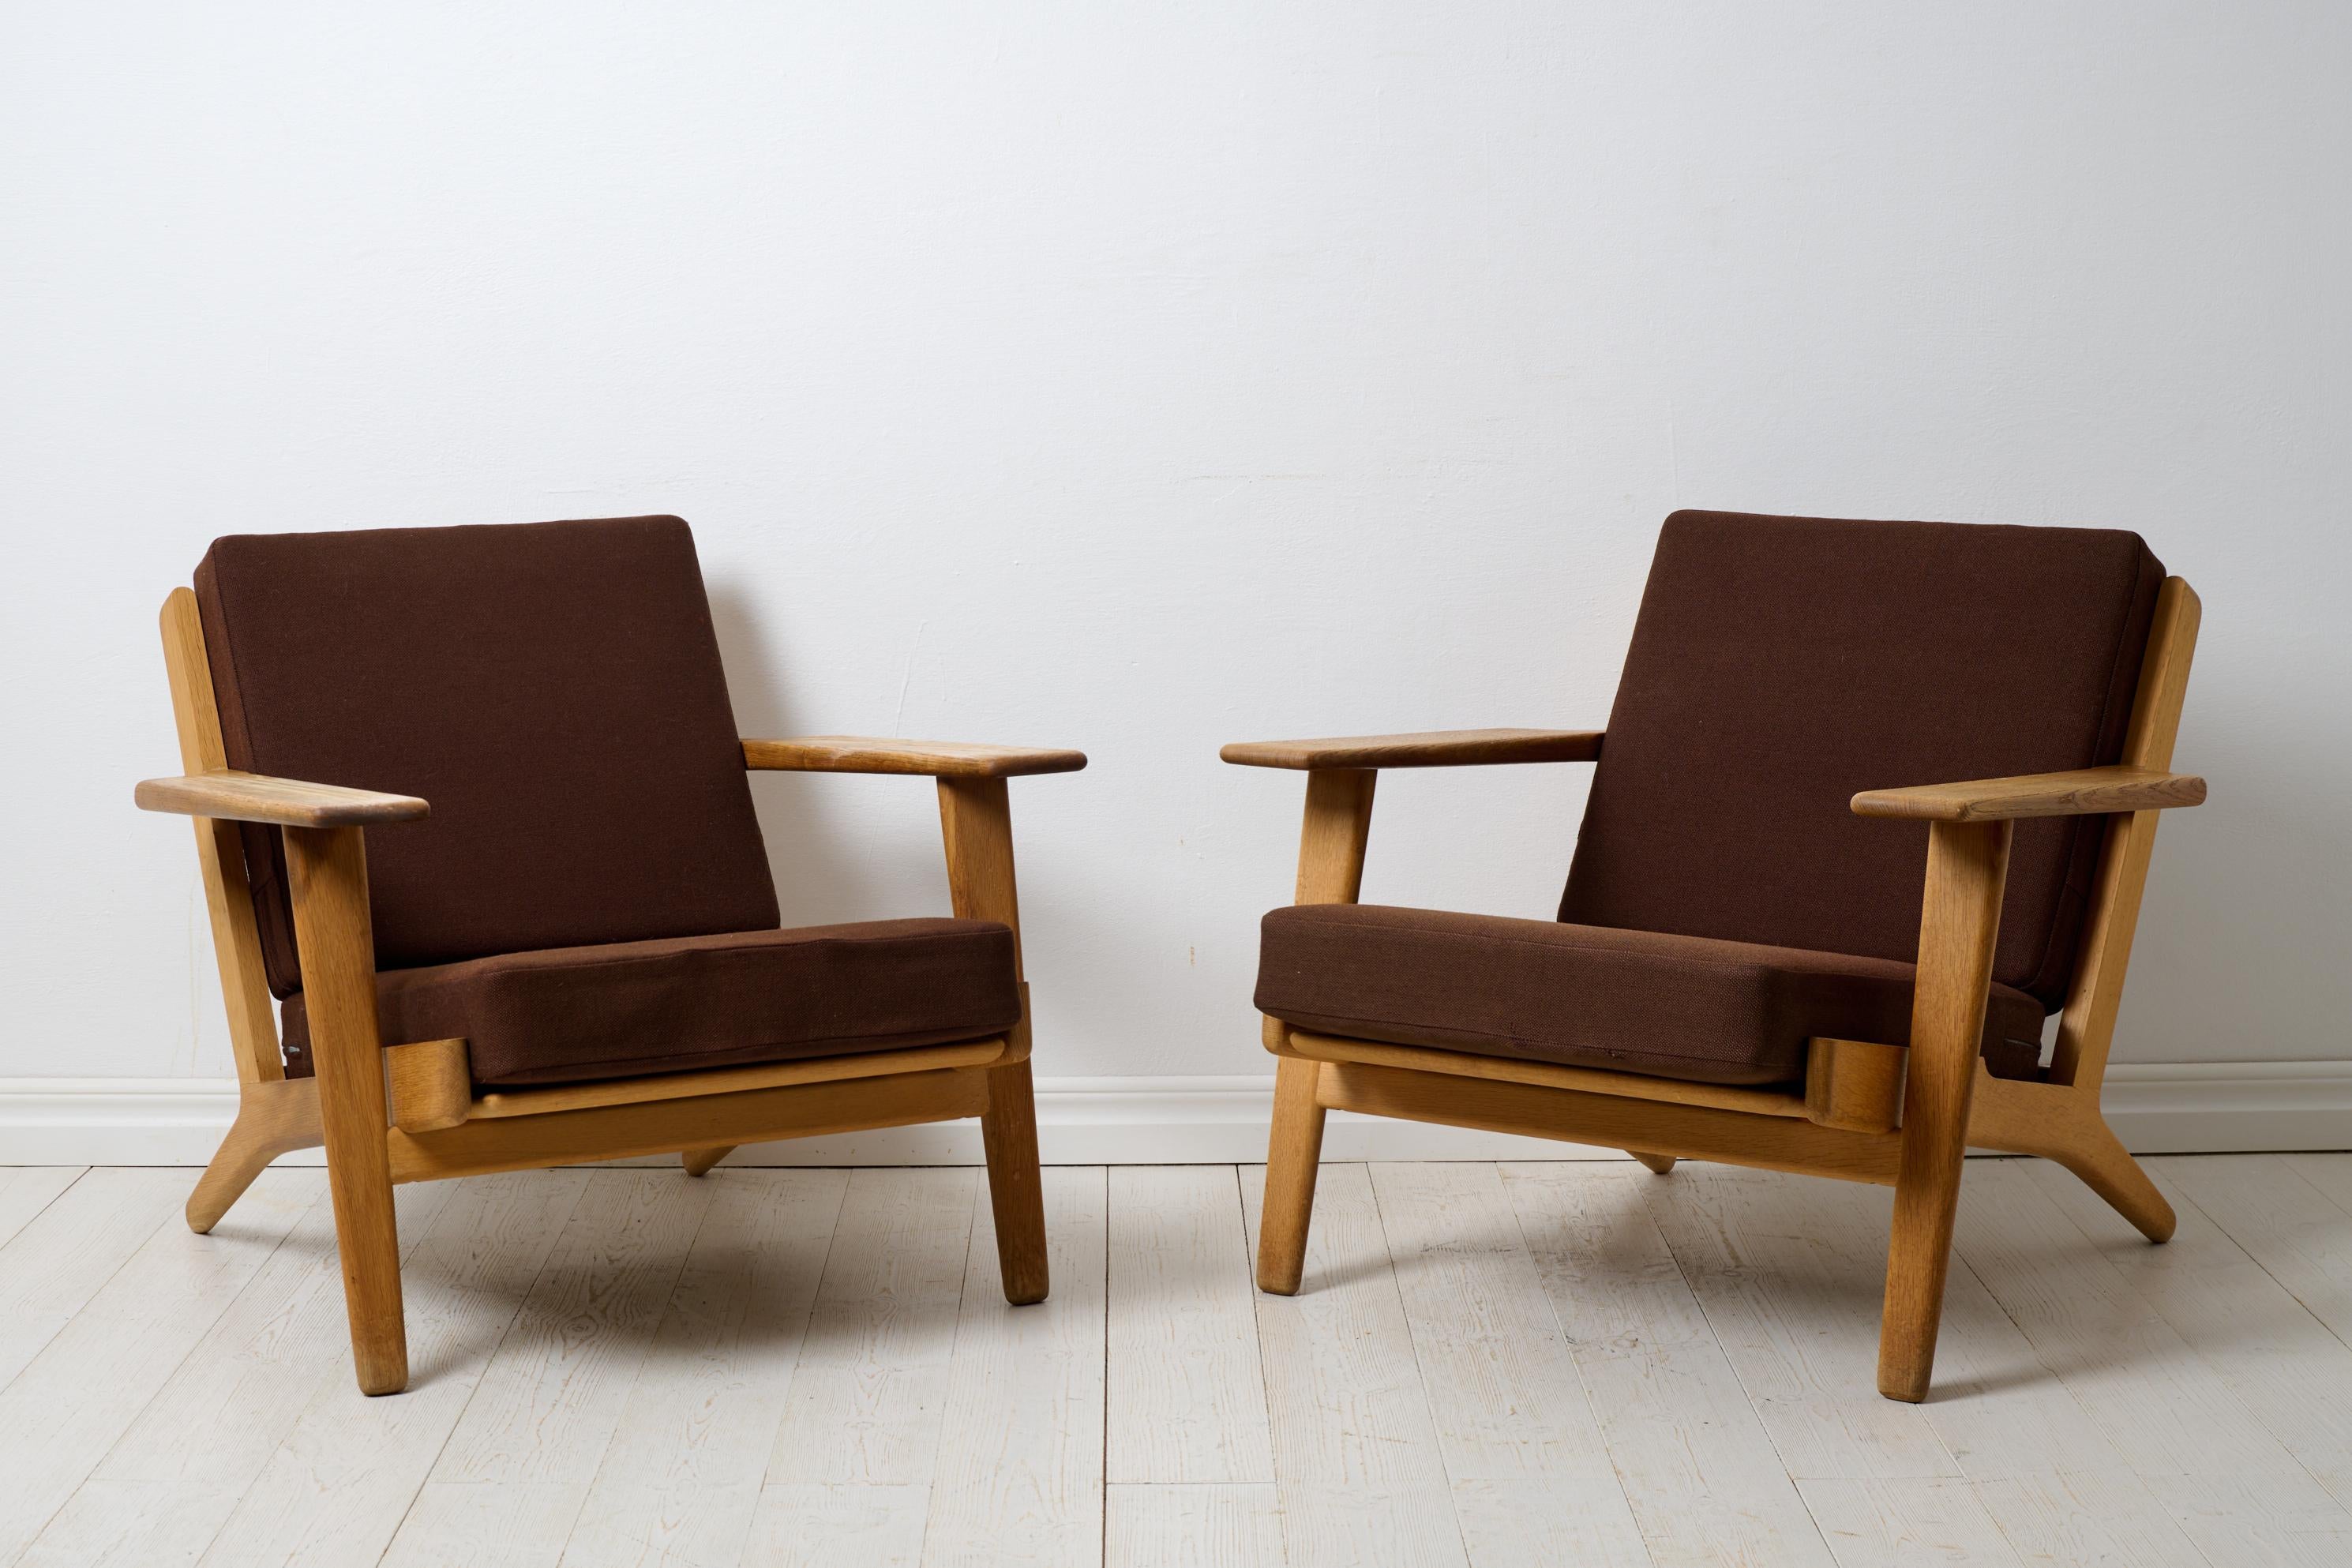 Vintage Hans J. Wegner Sessel Modell GE-290 für Getama Gedsted, Dänemark. Die Sessel sind ein Klassiker aus der Mitte des Jahrhunderts von einem der berühmtesten Namen dieser Zeit, Hans J. Wegner (Dänemark, 1914-2007). Dieses Sesselpaar besteht aus